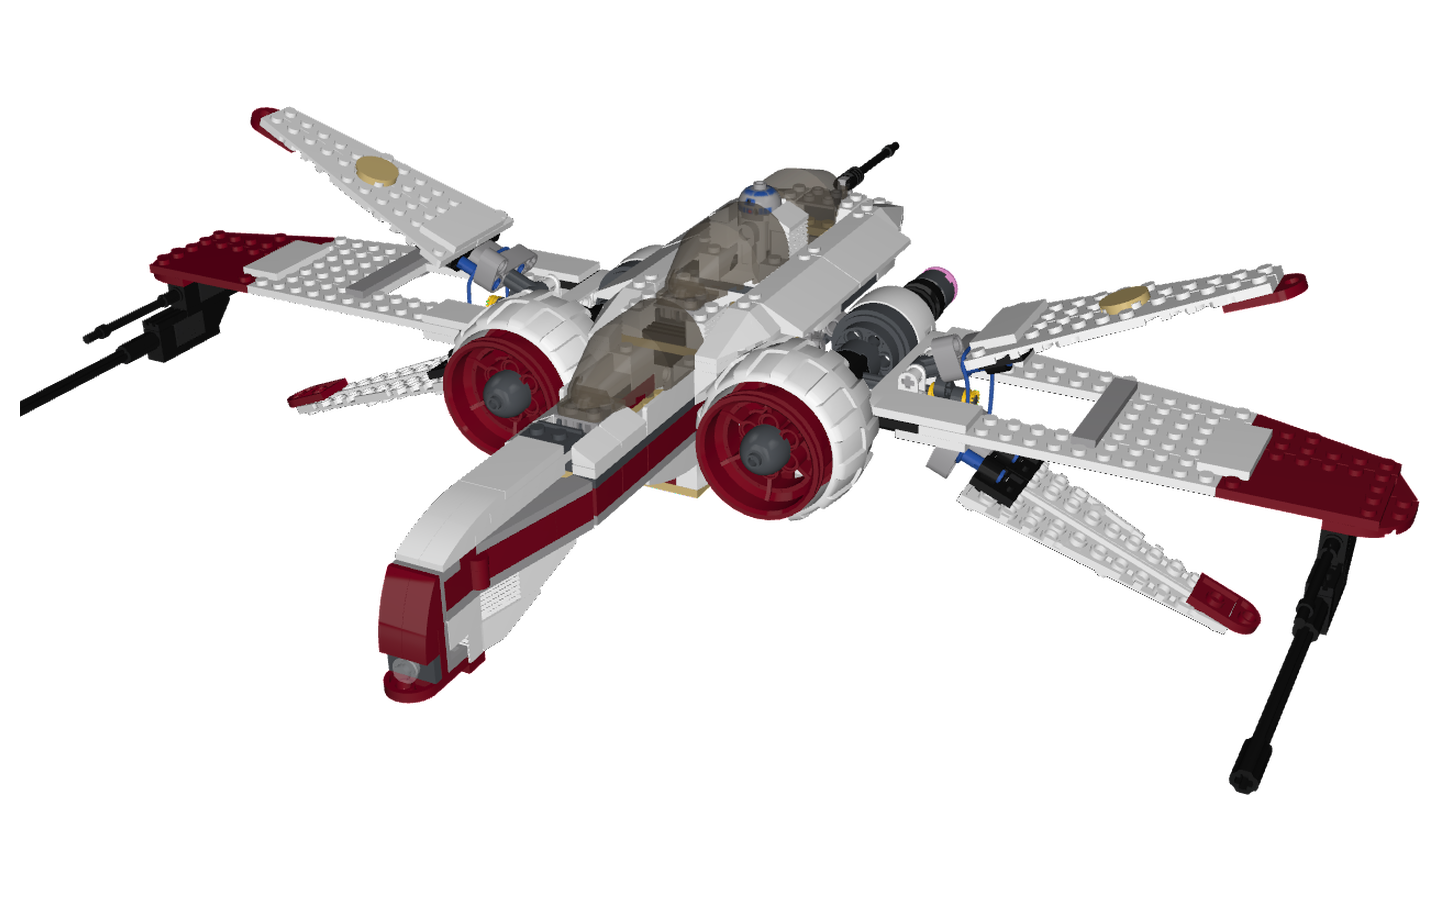 Mecabricks.com. LEGO Set 8088 1 ARC 170 Starfighter